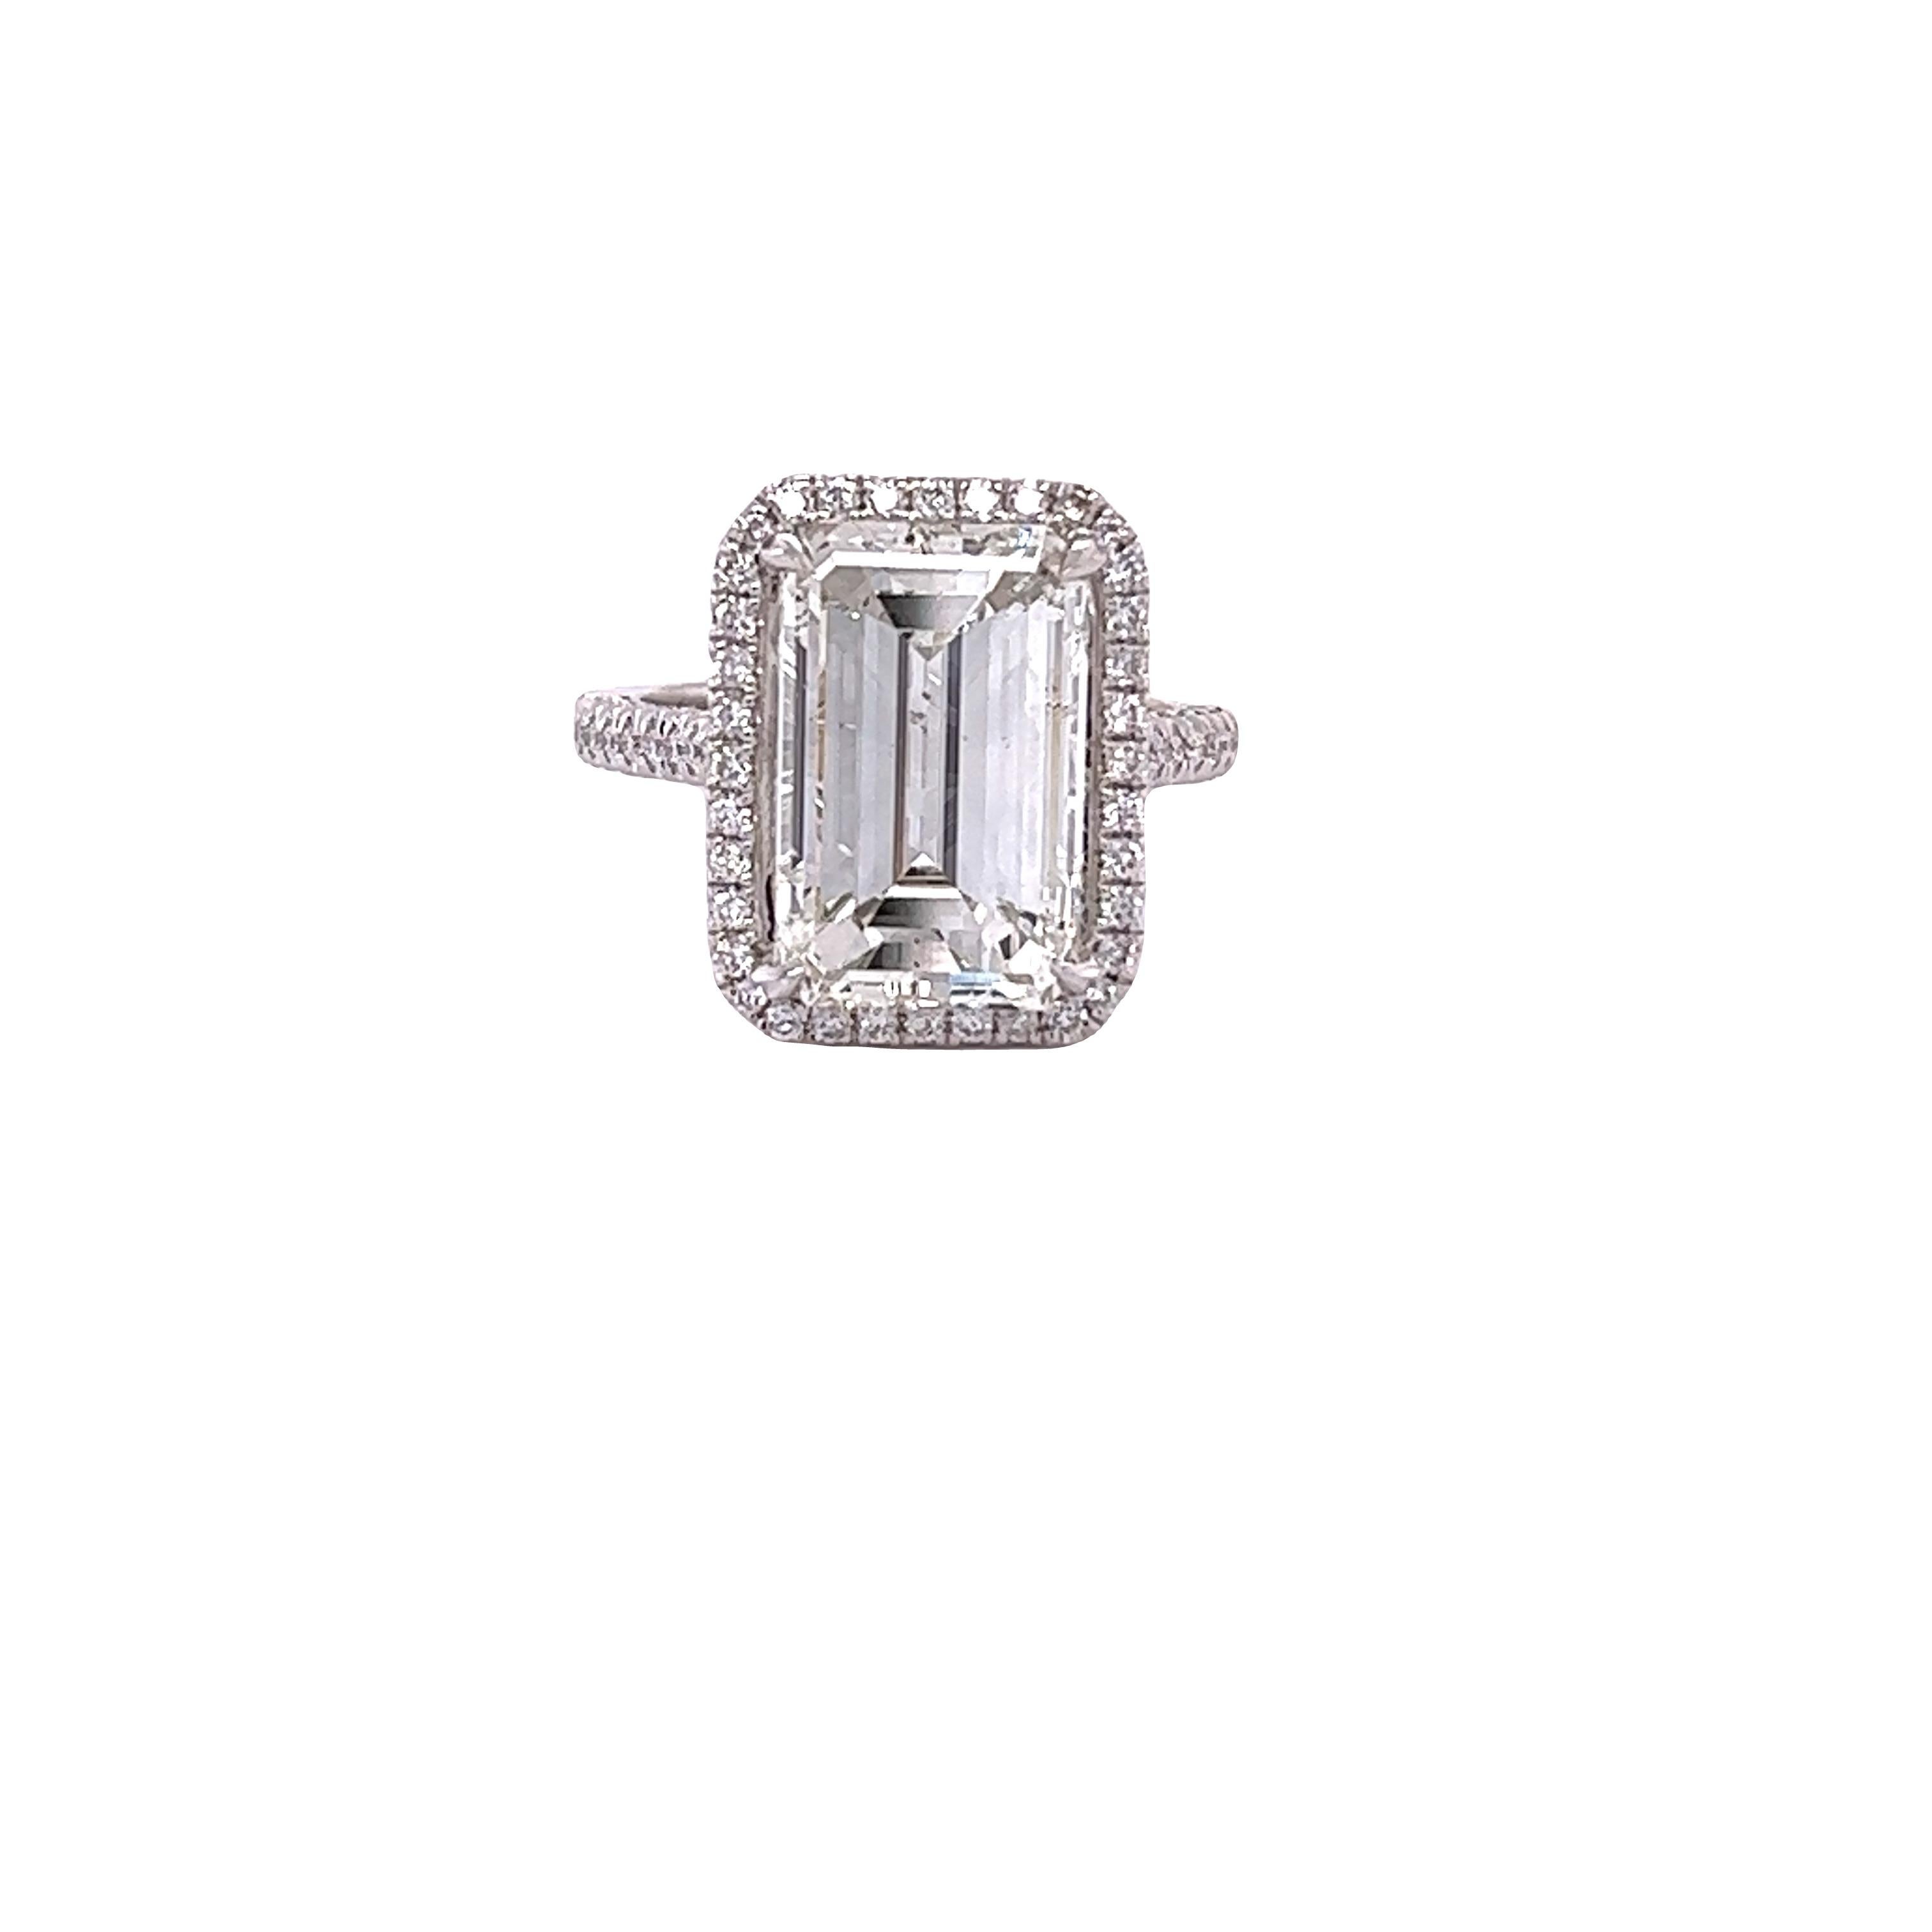 David Rosenberg 7.06 Carat Emerald Cut GIA Diamond Engagement Ring 4